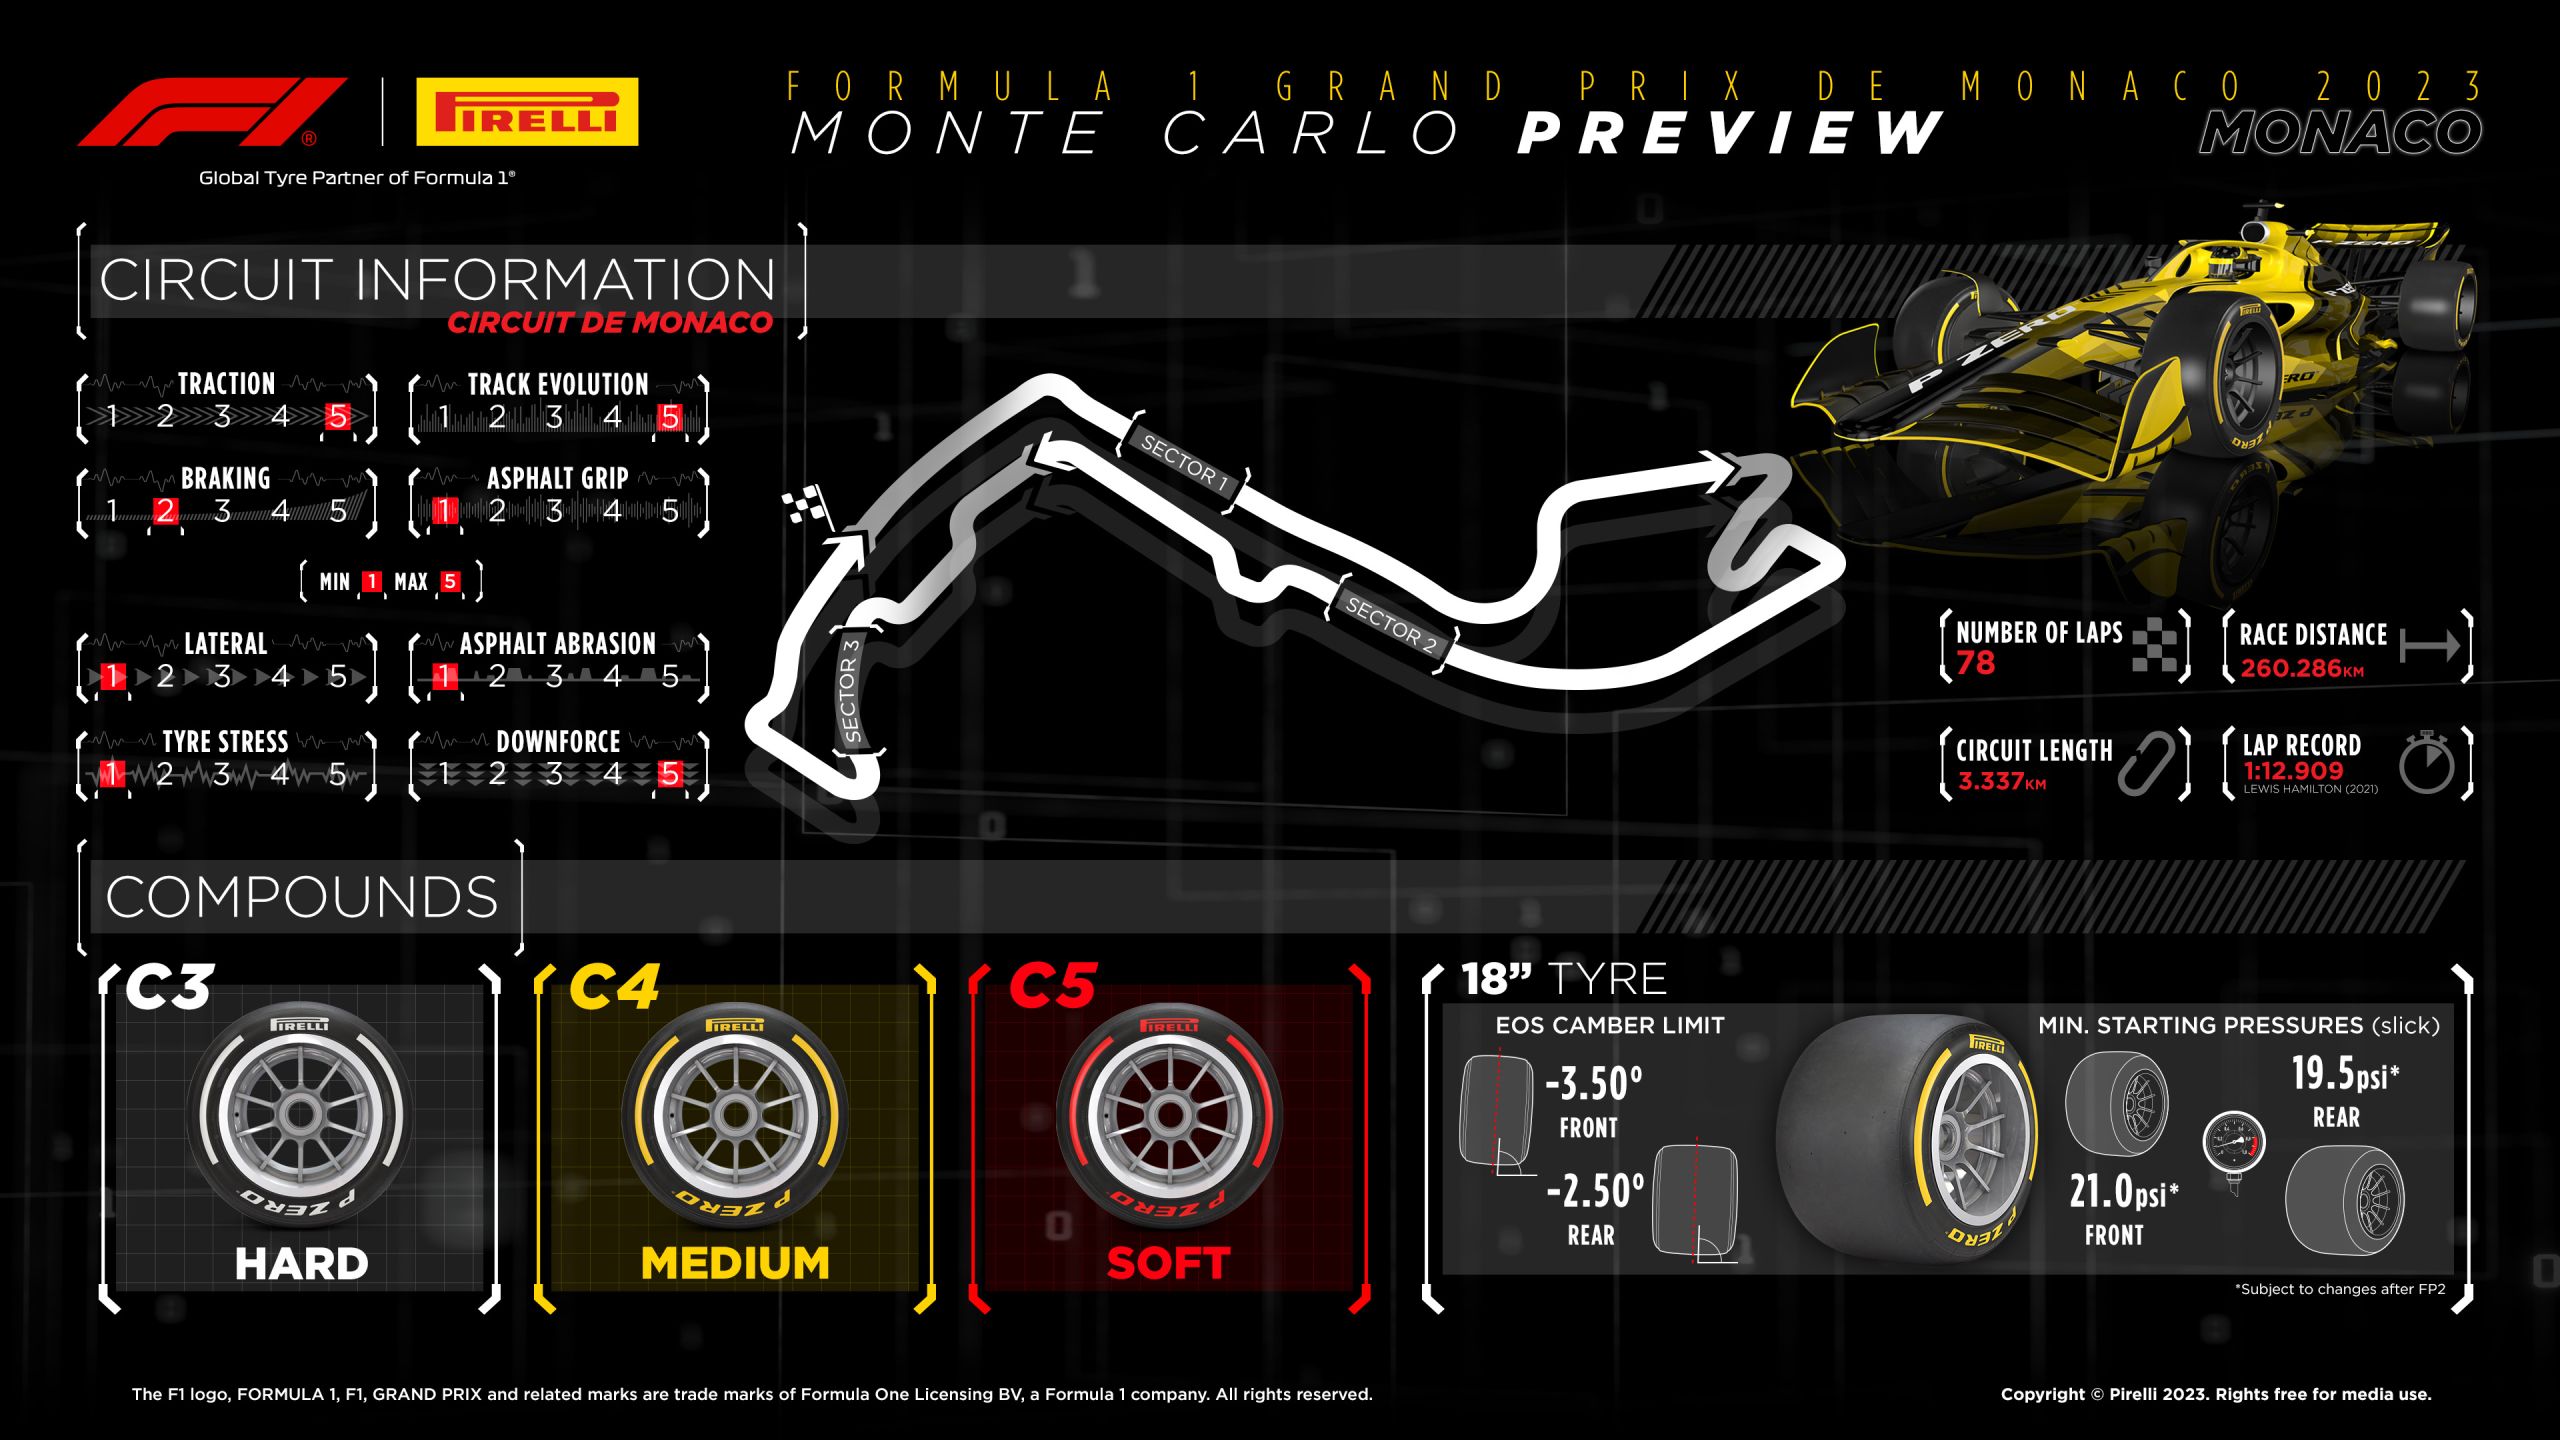 2023 Monaco Grand Prix: Selected Tyres